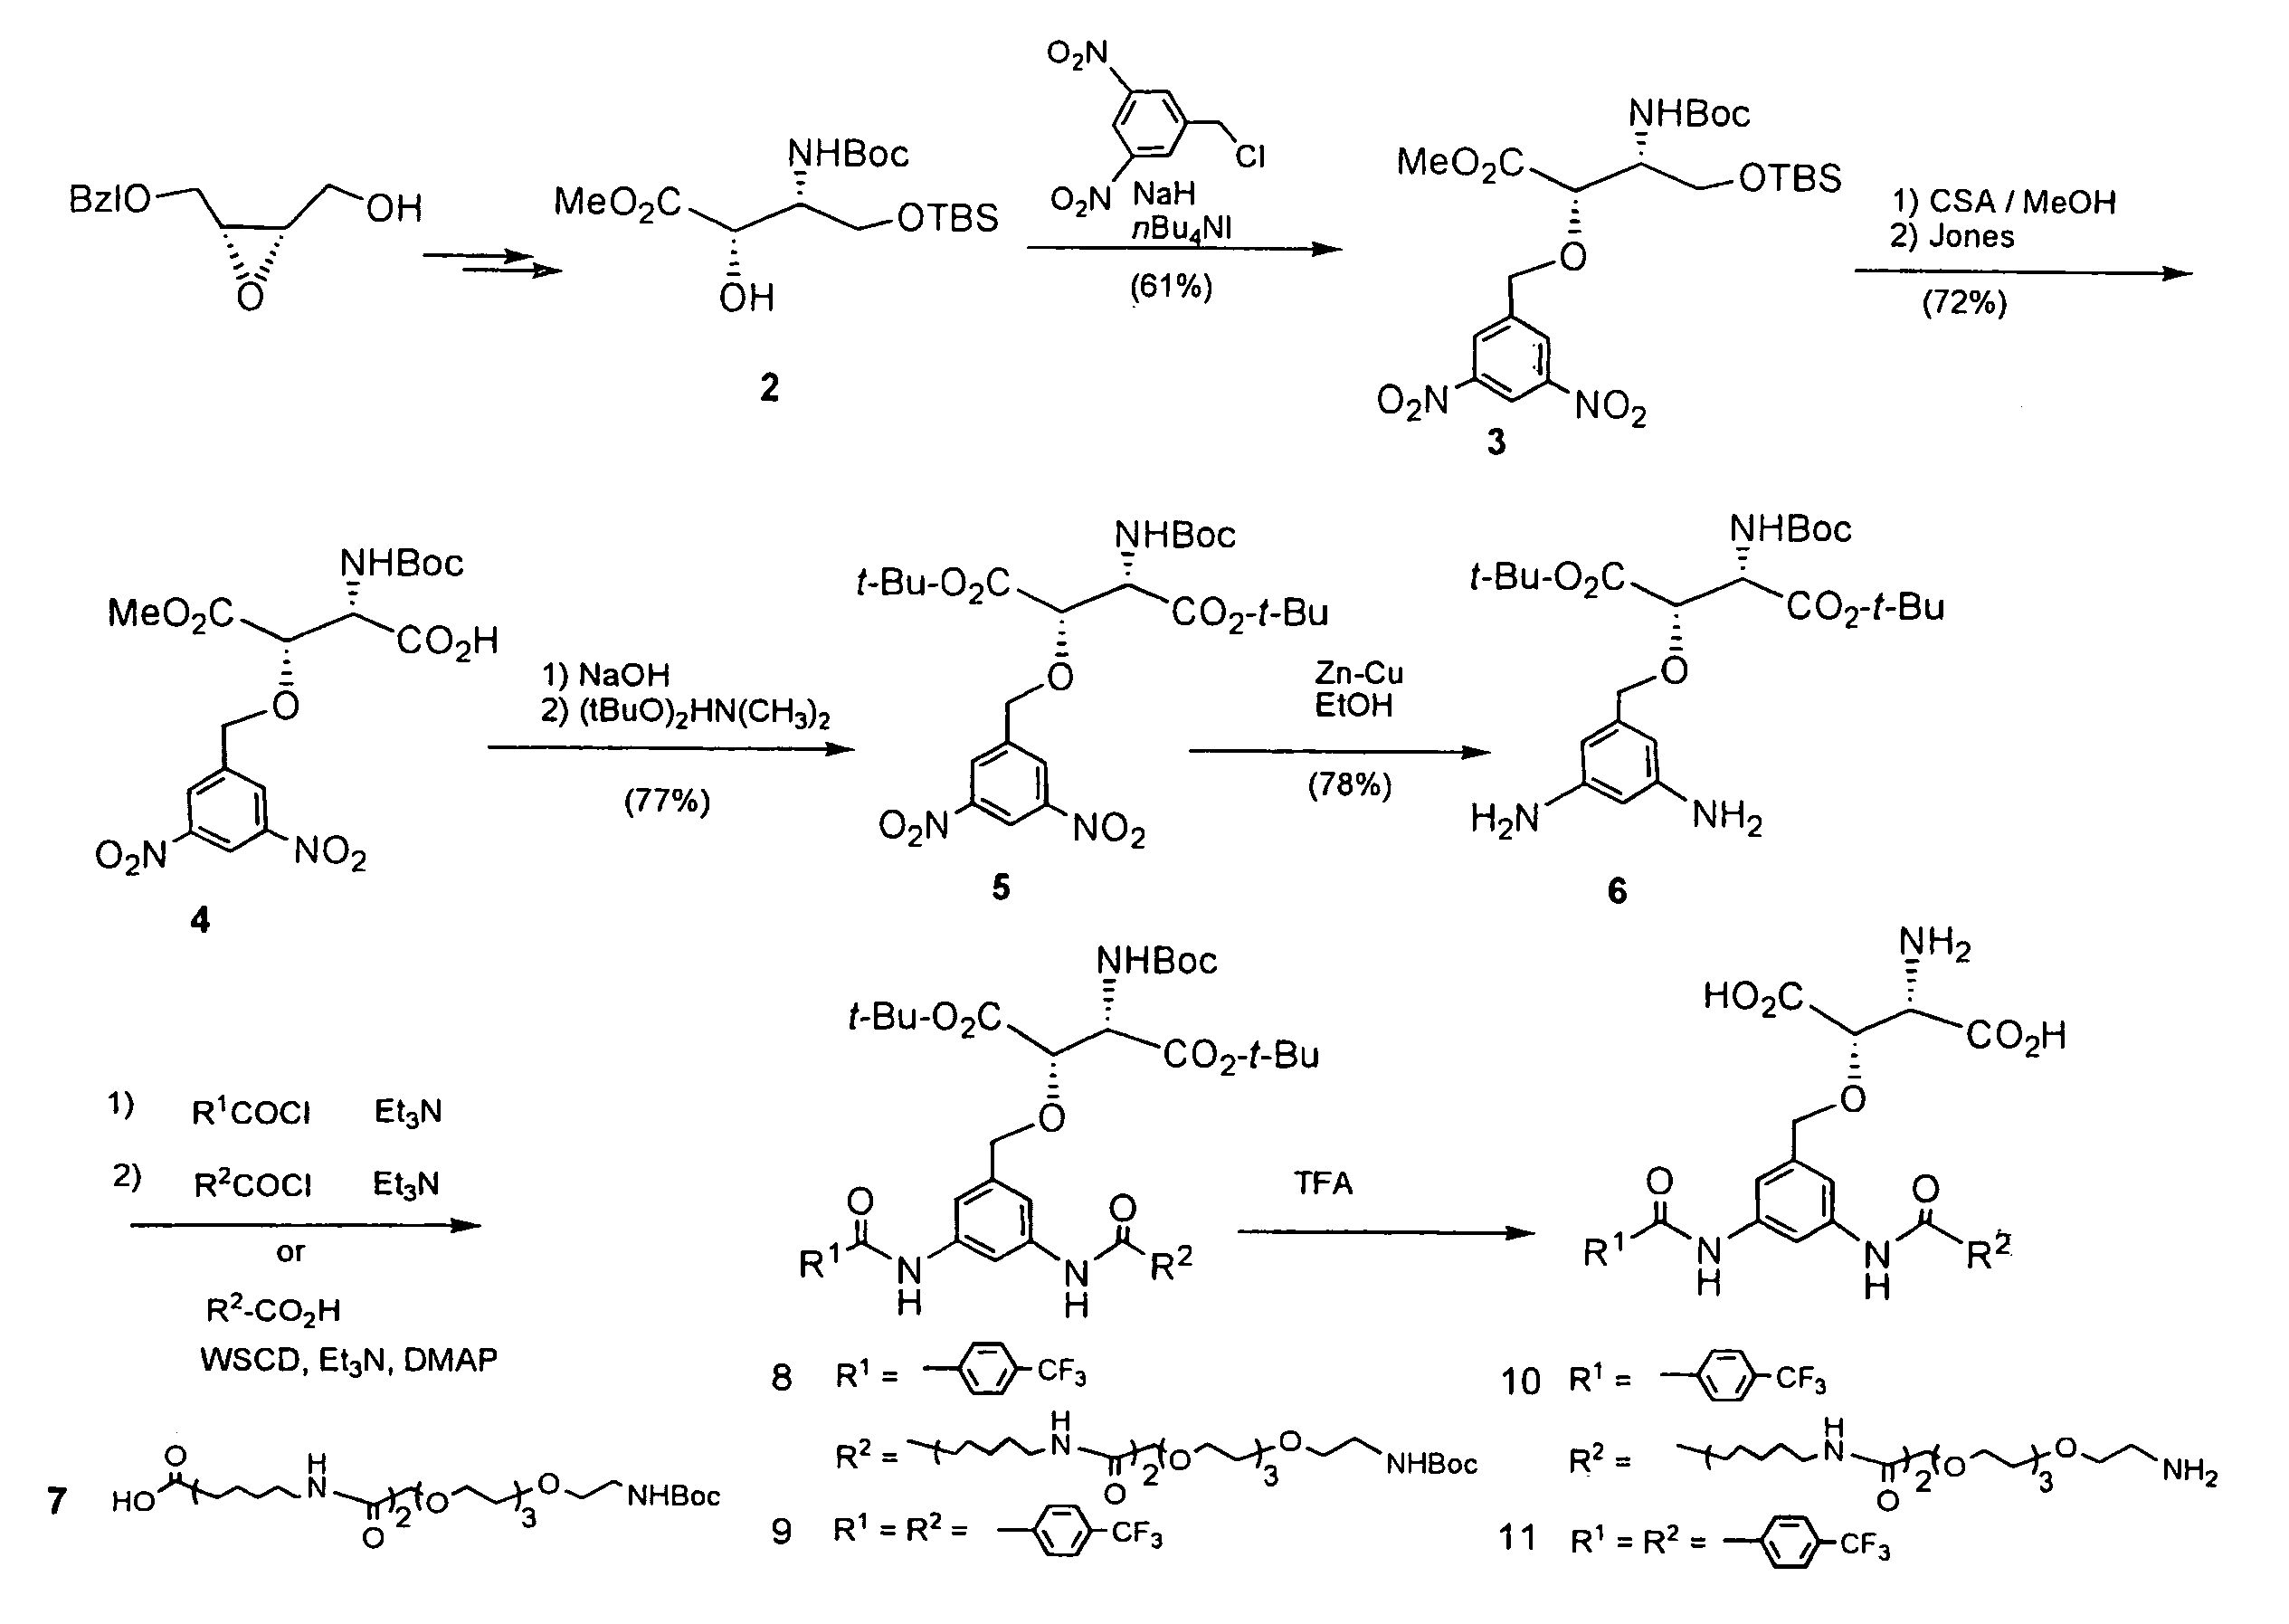 β-Benzyloxyaspartic acid derivatives having two substituents on their benzene rings